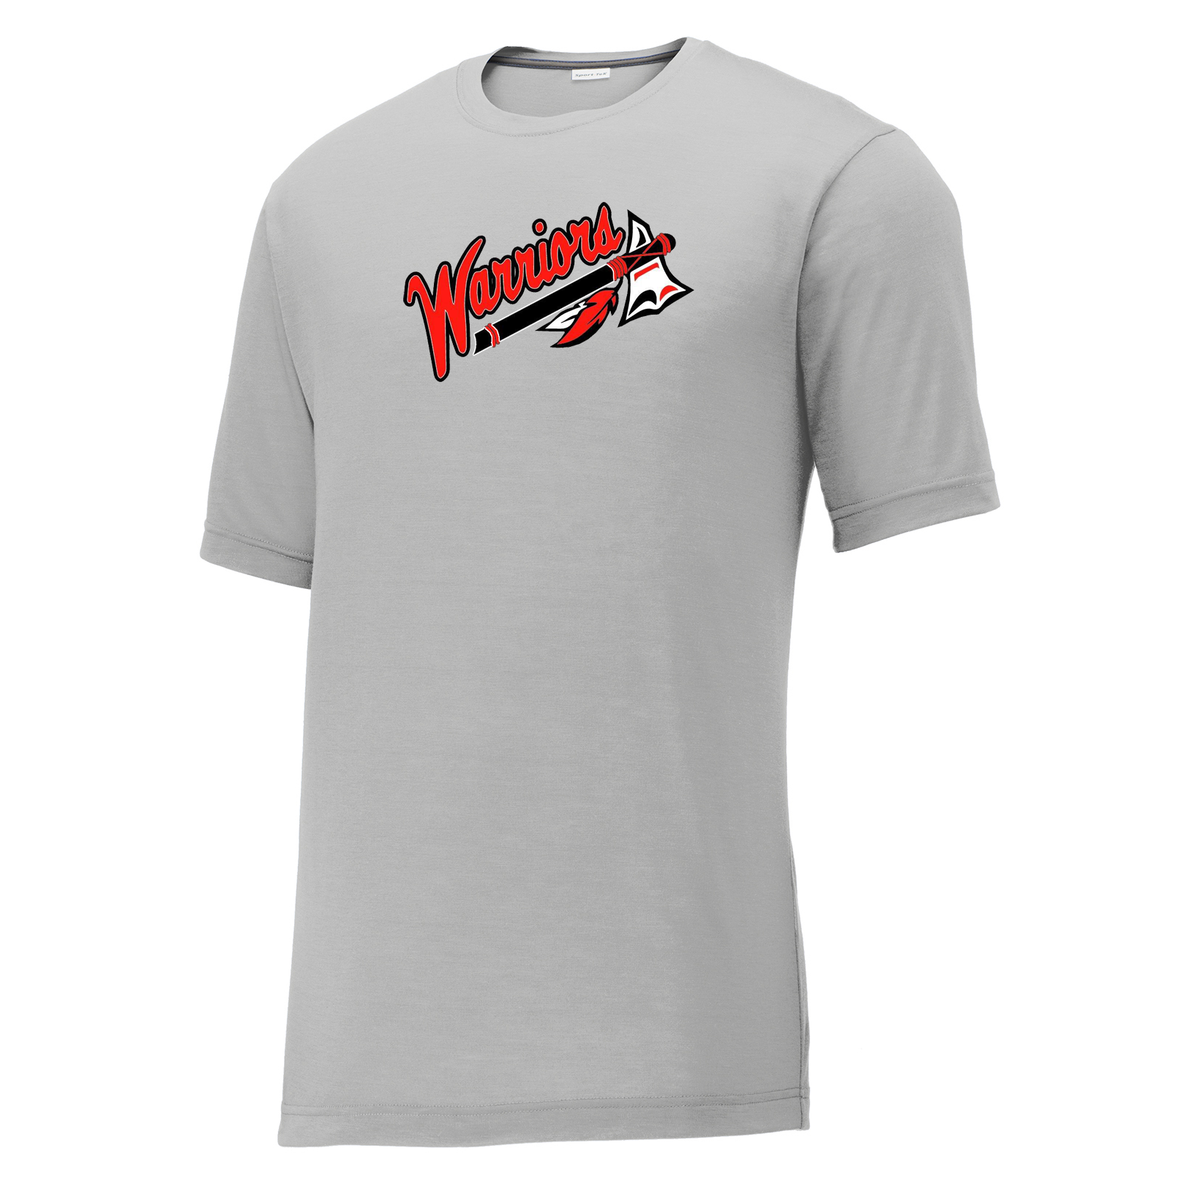 Dothan Warriors Softball CottonTouch Performance T-Shirt